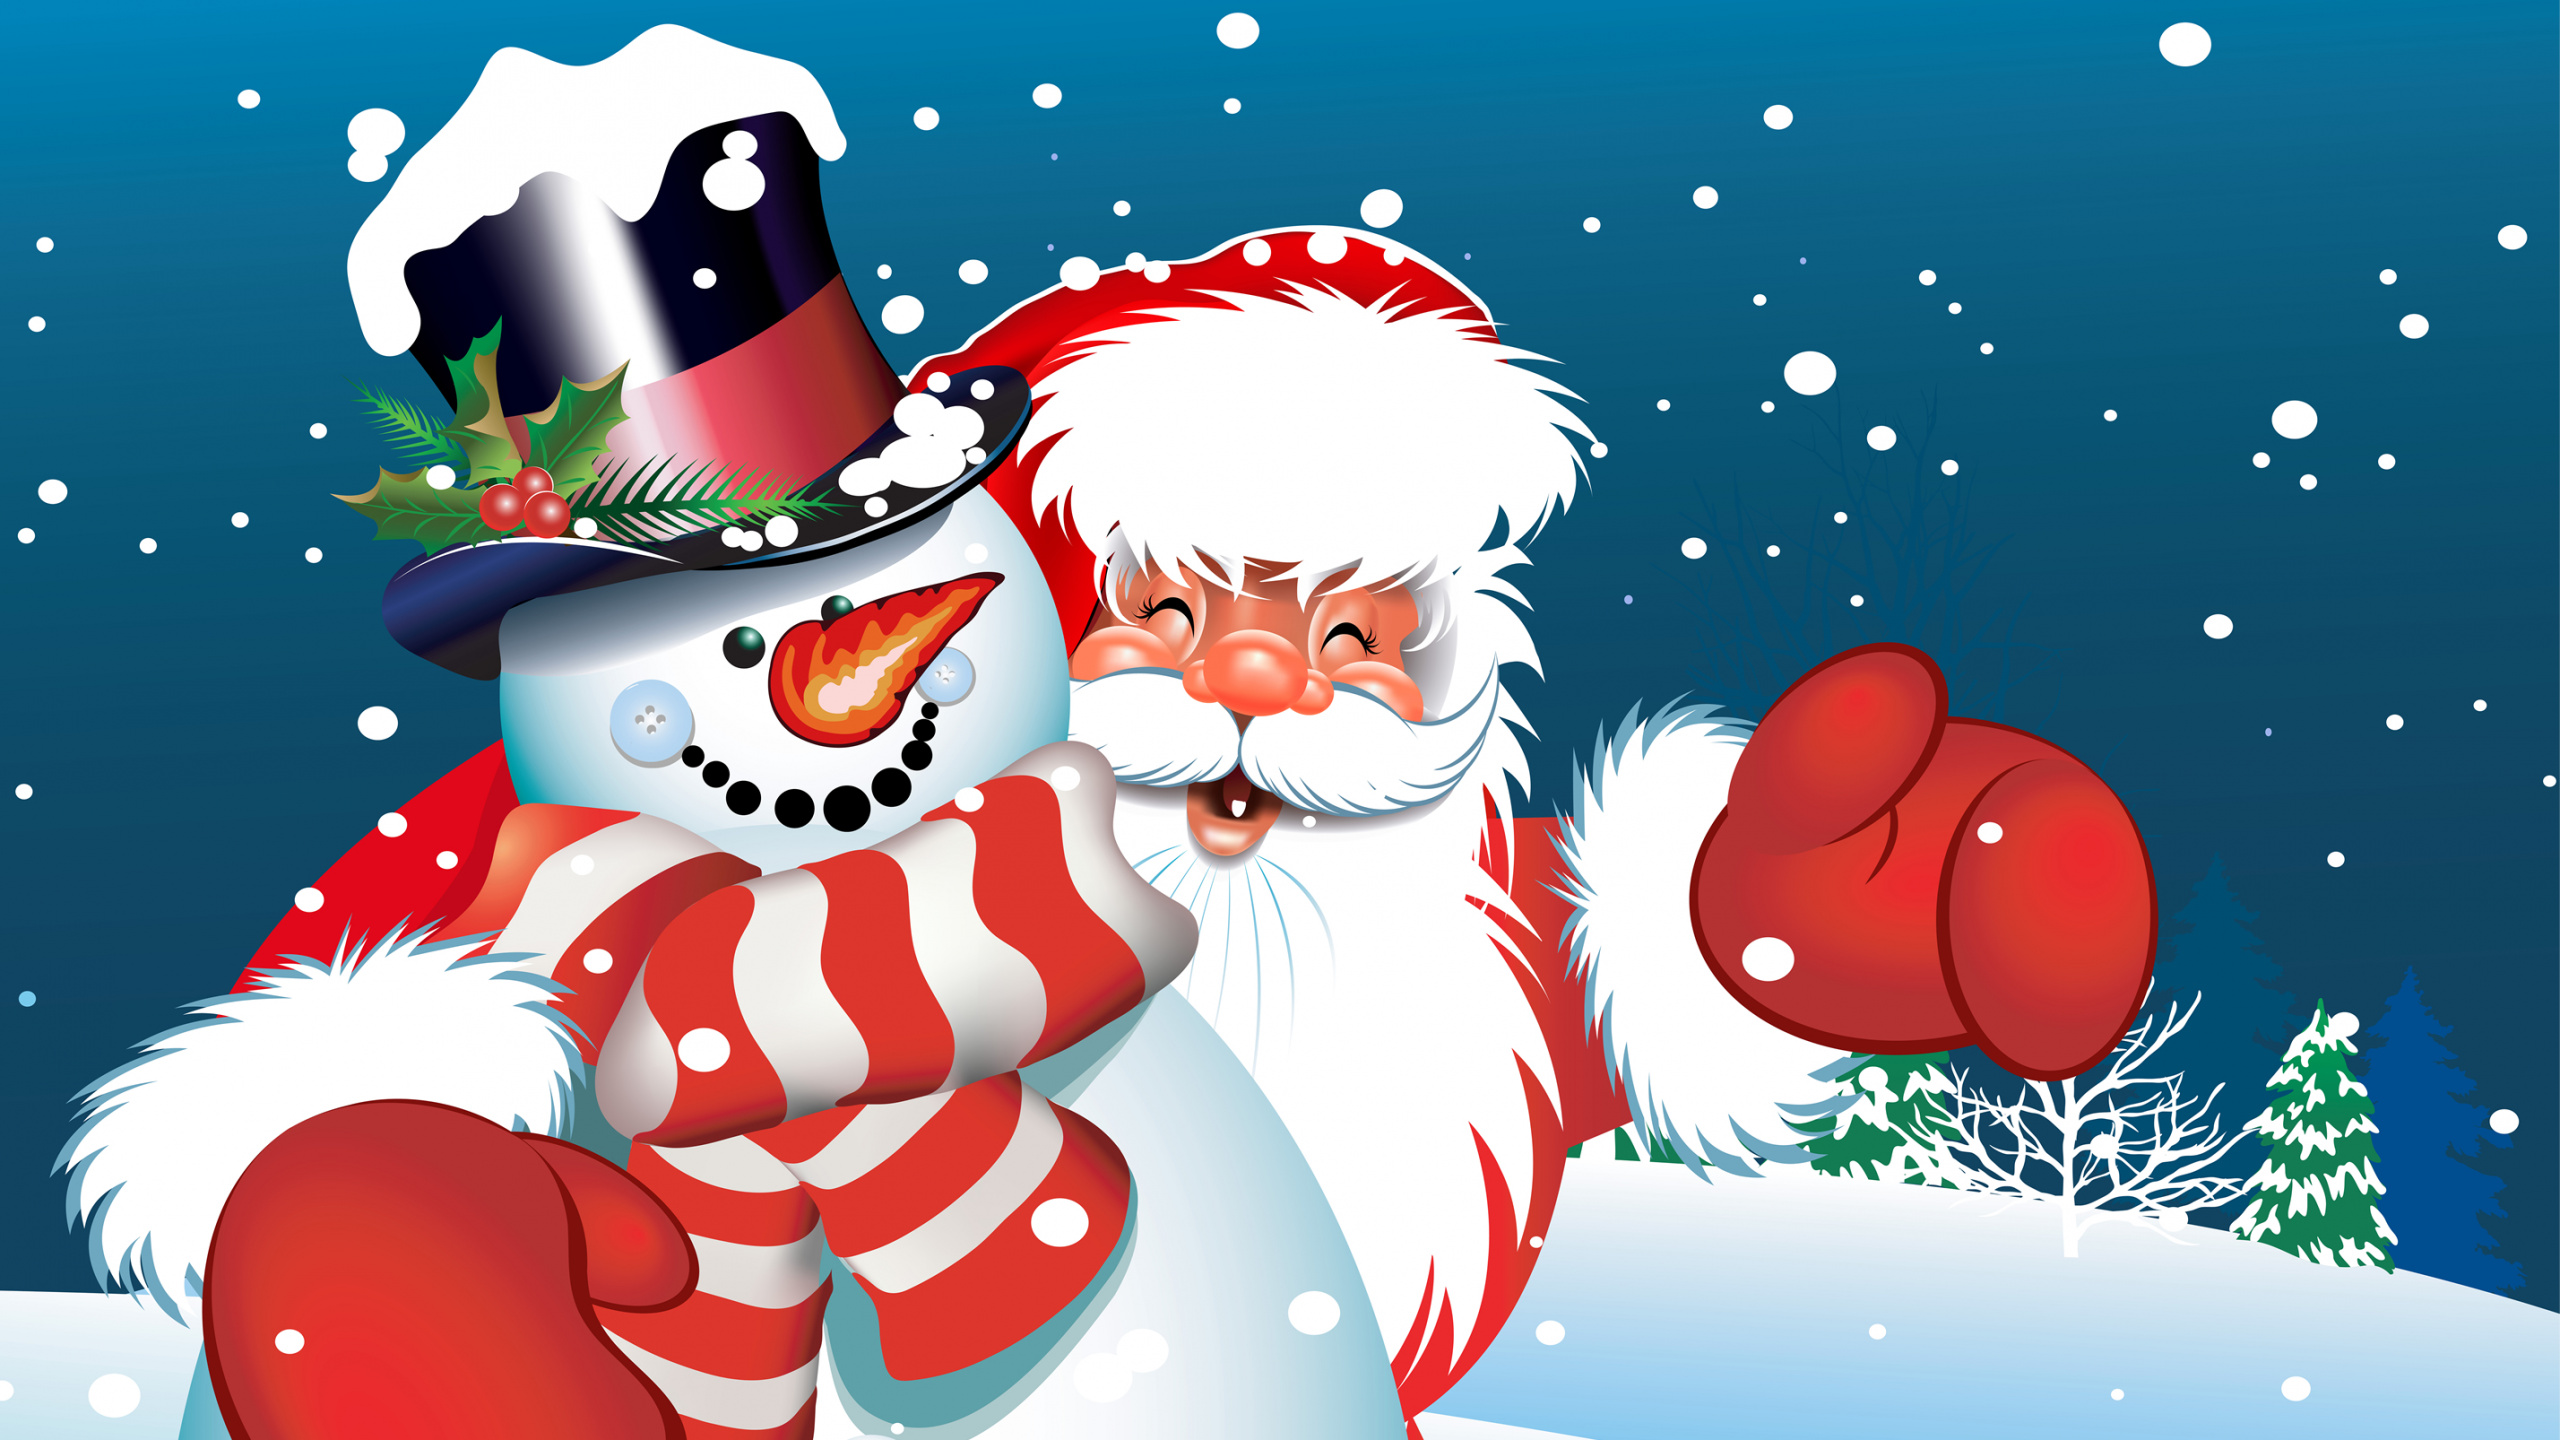 Weihnachtsmann, Weihnachten, Schneemann, Cartoon, Illustration. Wallpaper in 2560x1440 Resolution